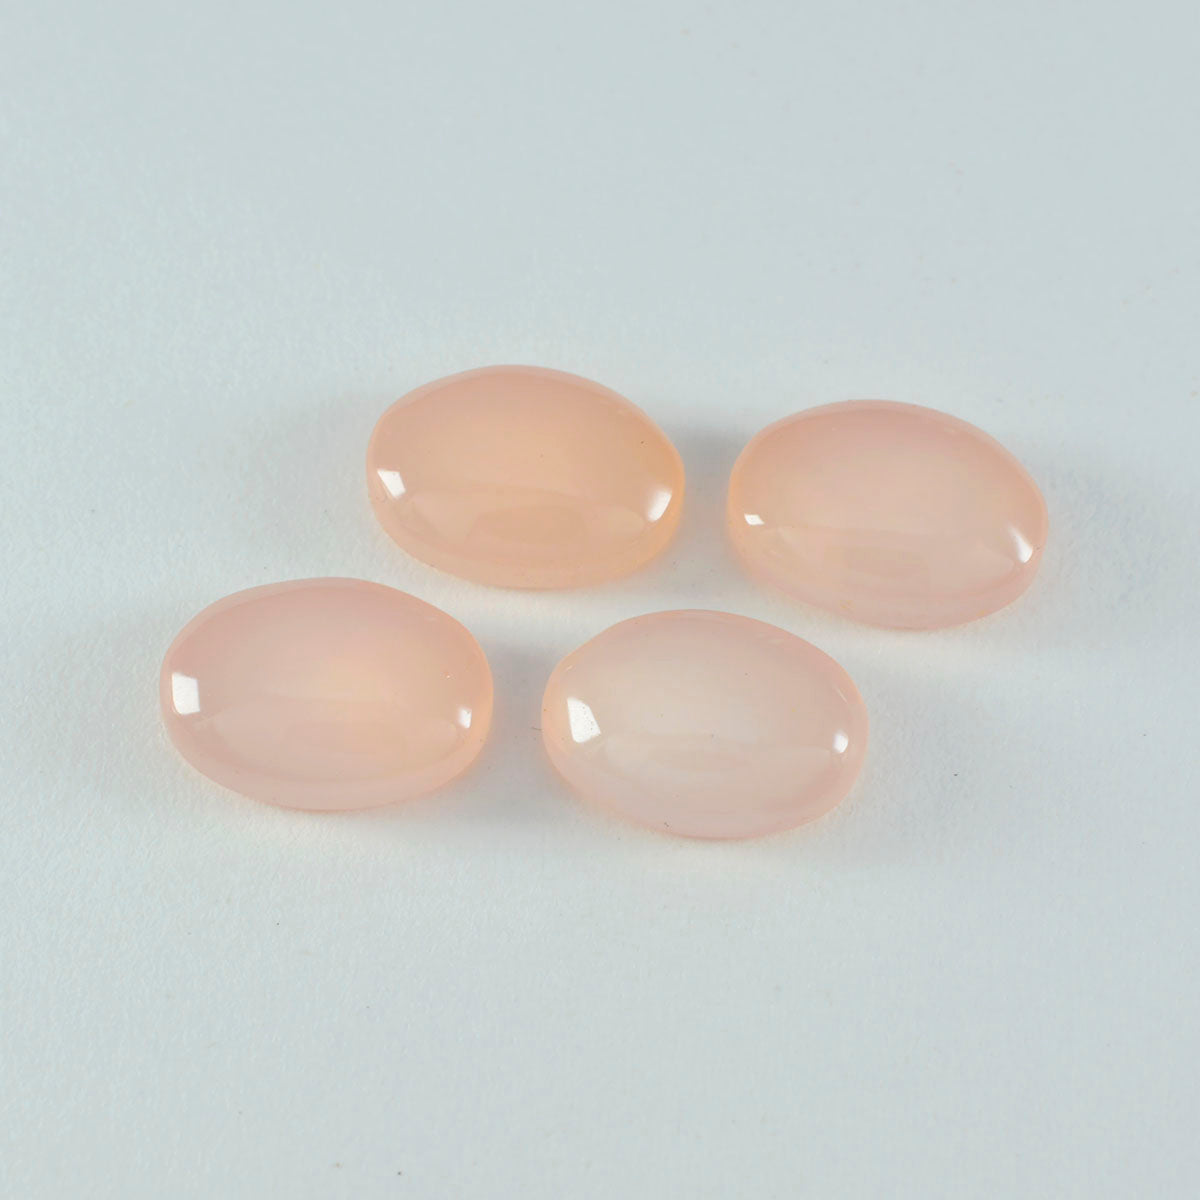 Riyogems 1PC roze rozenkwarts cabochon 9x11 mm ovale vorm fantastische kwaliteit losse edelsteen